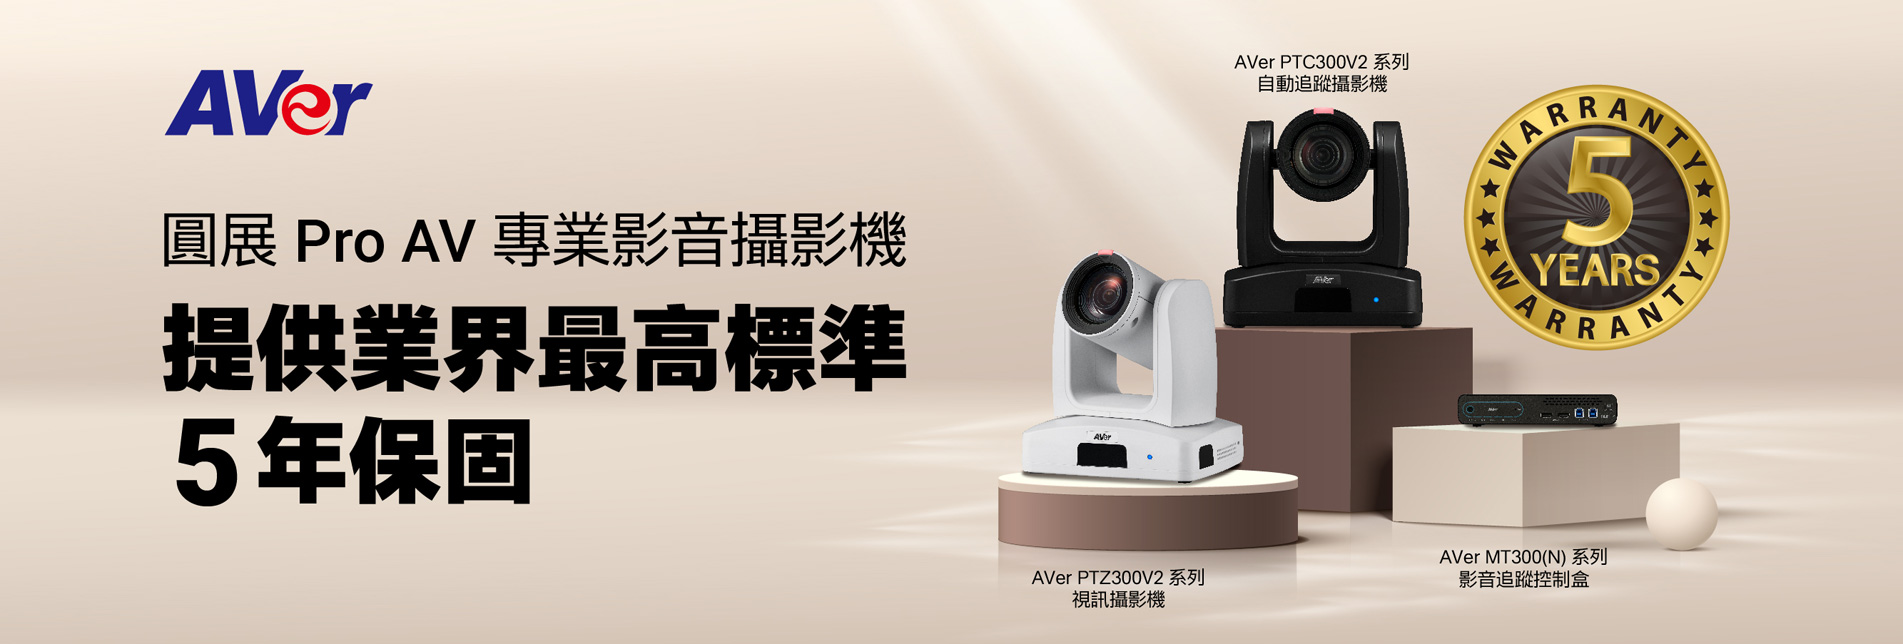 圓展 Pro AV 專業影音攝影機 提供業界最高標準 5年保固